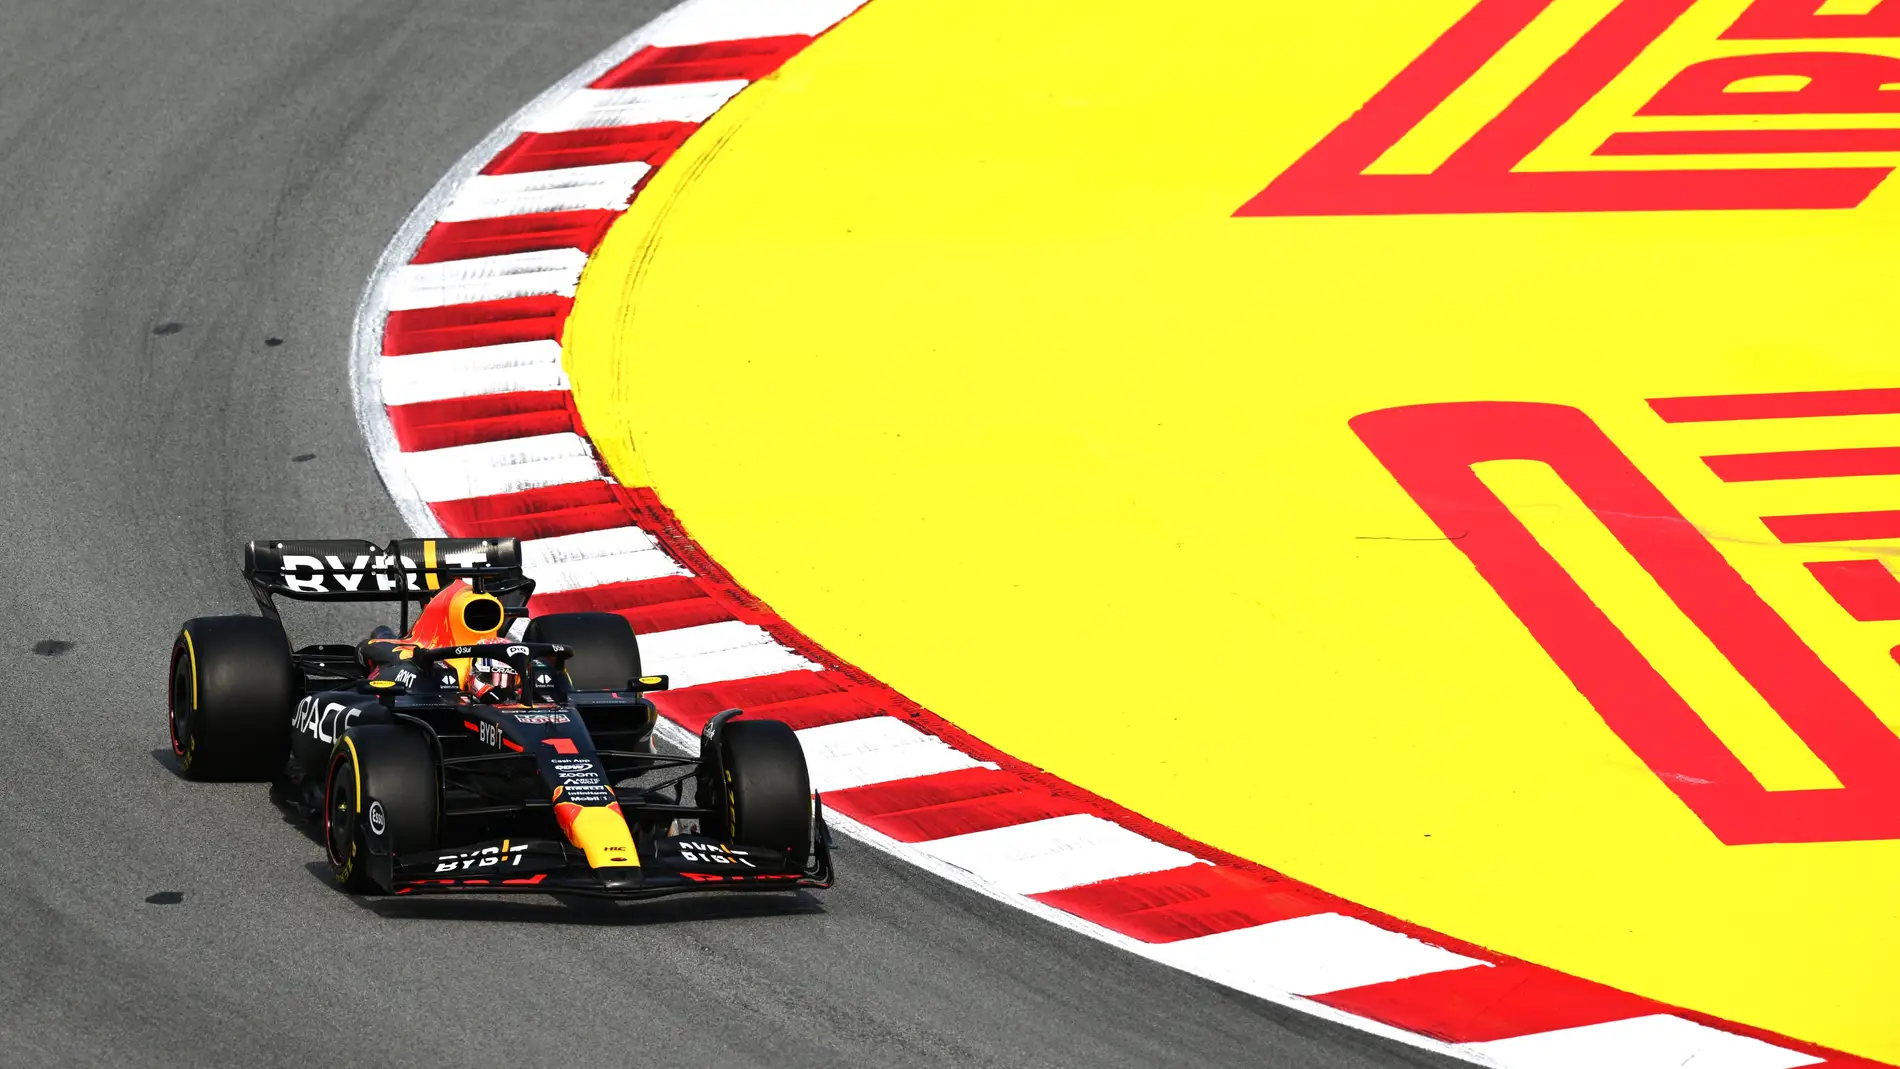 Max Verstappen lidera los libres en Barcelona 